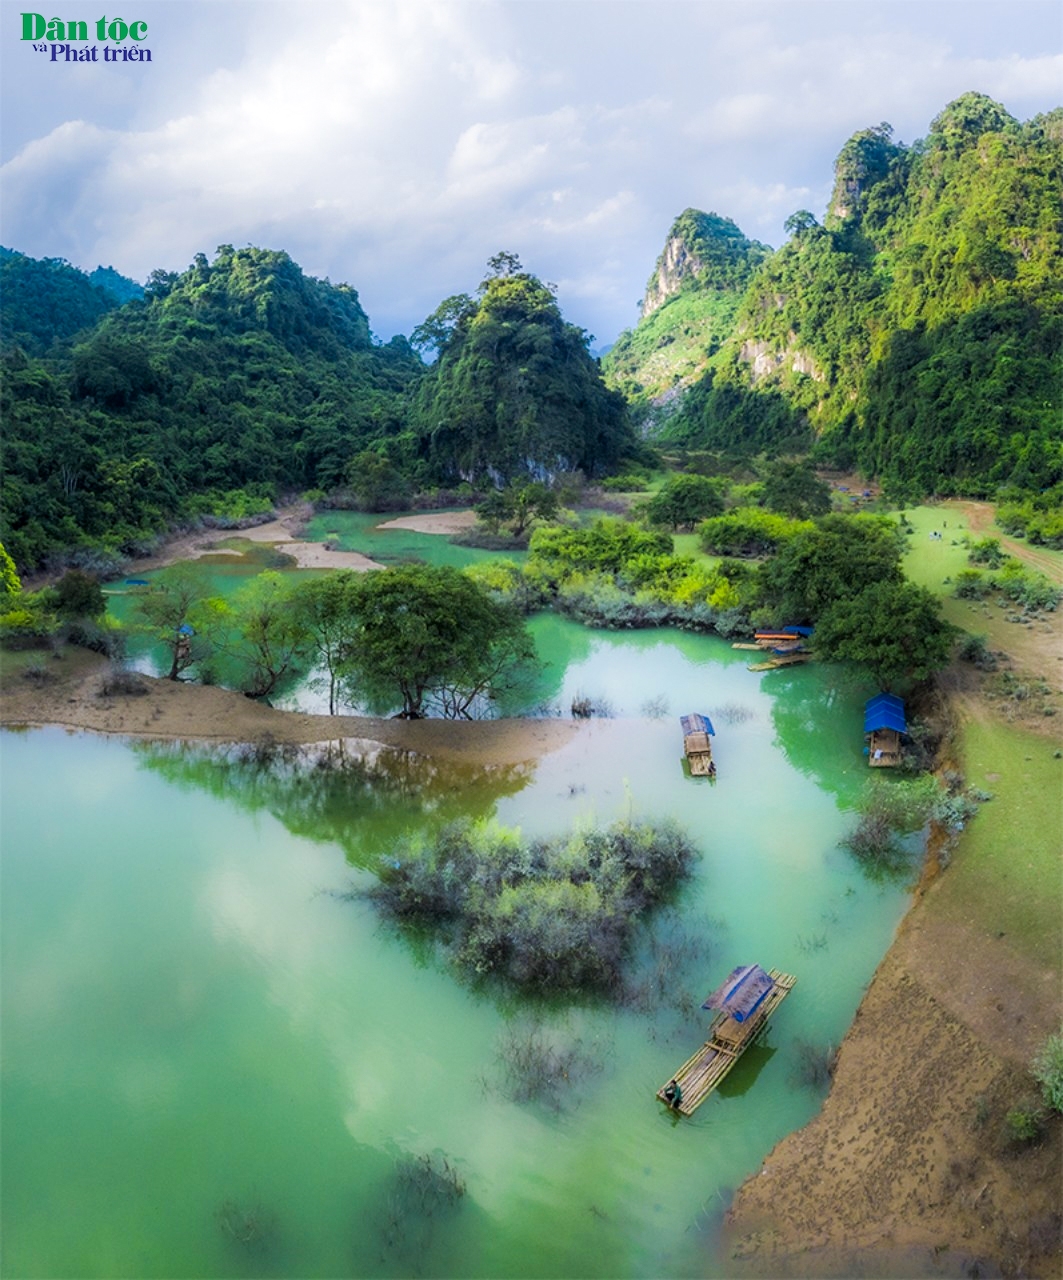 Đây cũng là mùa hút du khách nhất của Đồng Lâm với nhiều hoạt động vui chơi hấp dẫn như bơi lội, câu cá… và đặc biệt là chèo thuyền, bè dạo quanh thung lũng